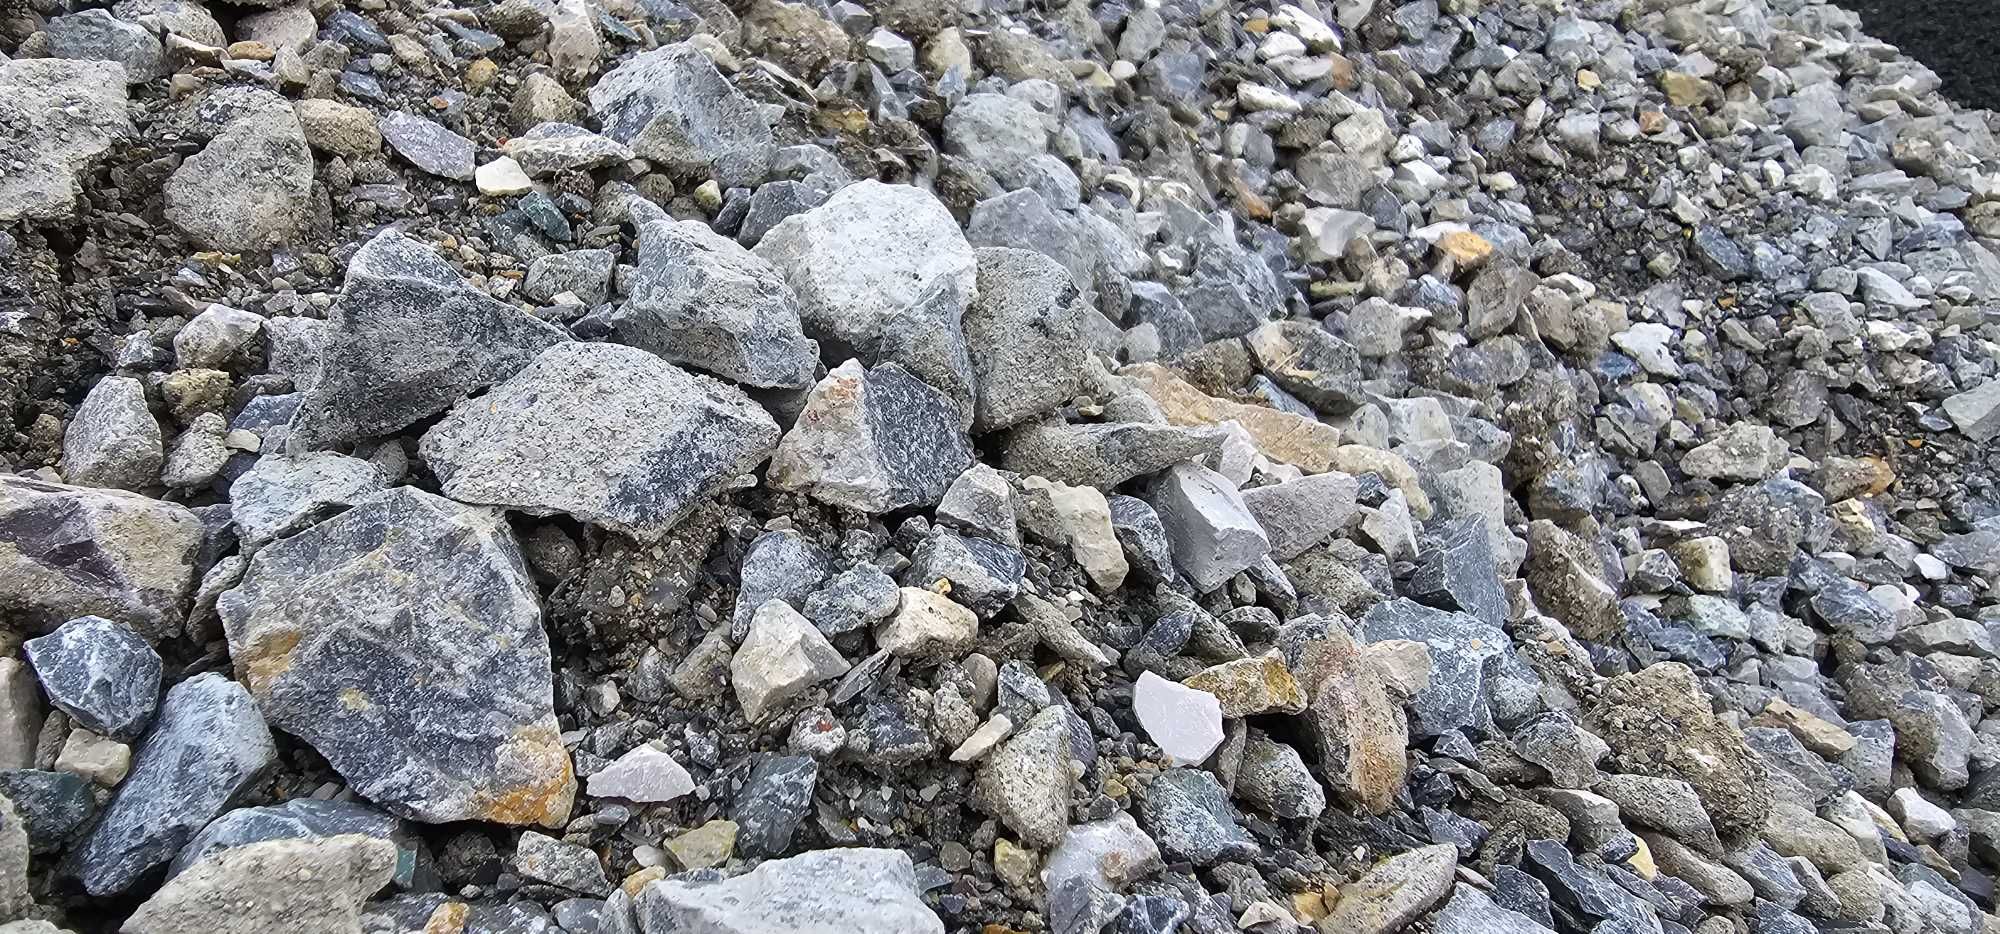 Kruszywo kamień kliniec tłuczeń 0-31, 0-63, 31-63 grys piasek wysiewka